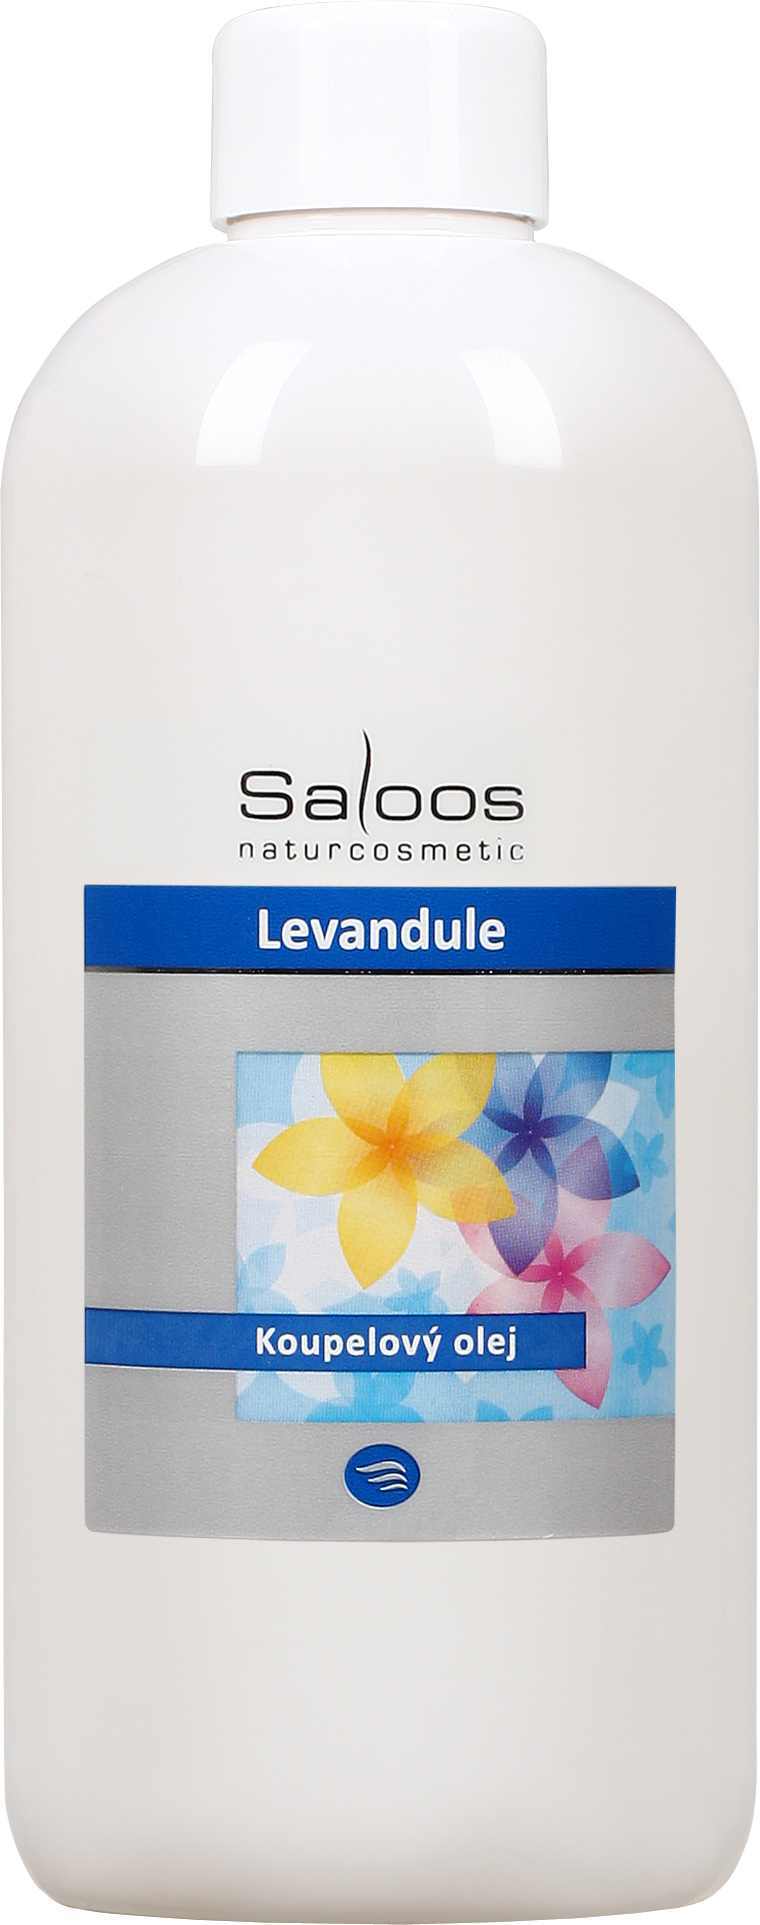 Saloos Levandule - koupelový olej Balení: 1000 ml